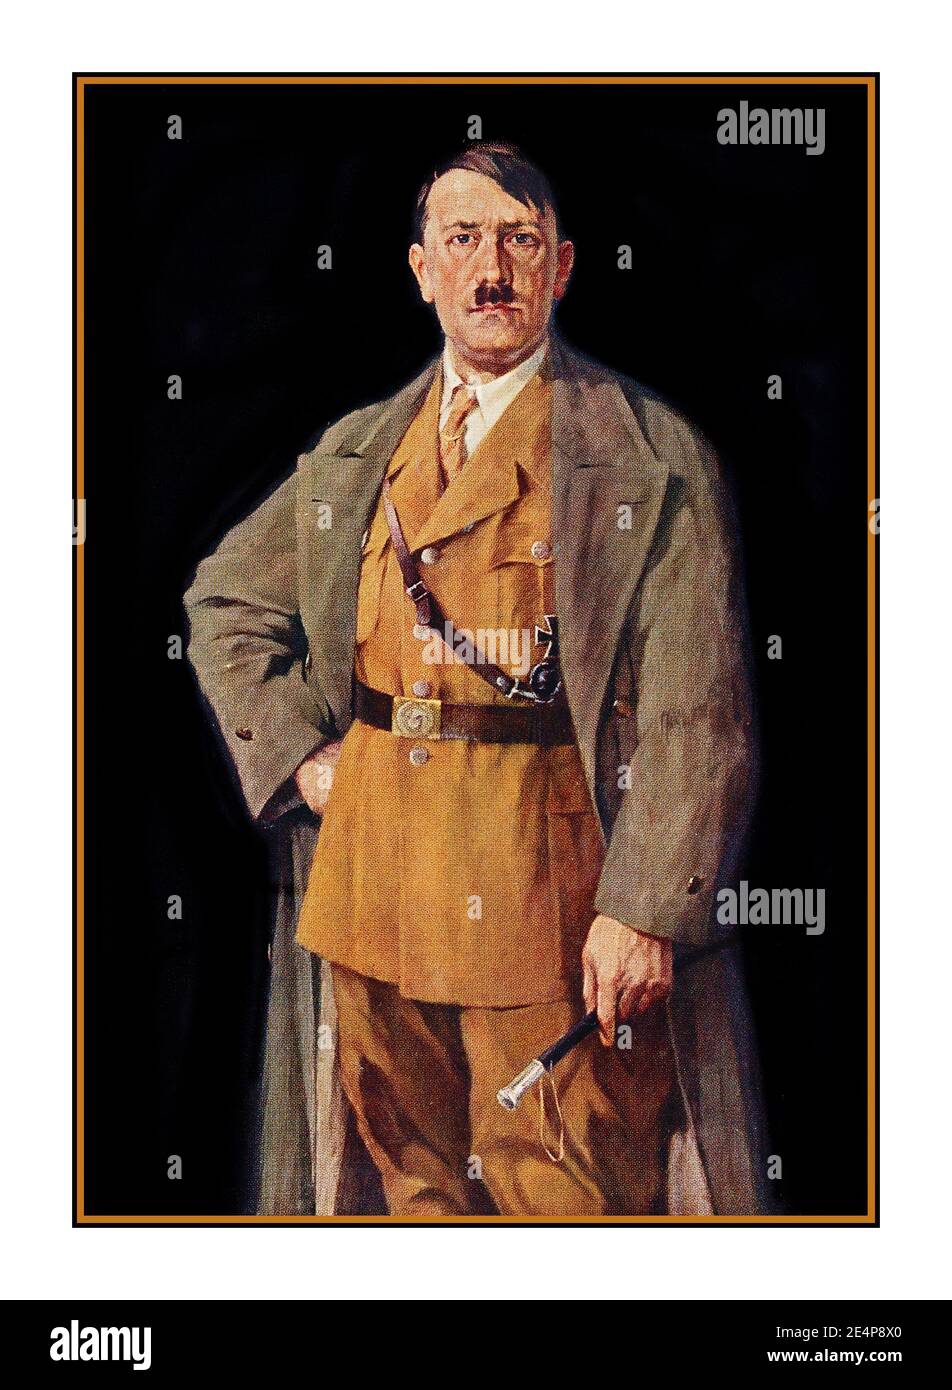 ADOLF HITLER Retrato del Führer Adolf Hitler en uniforme militar 1938 Alemania nazi antes de la Segunda Guerra Mundial Adolf Hitler era un político alemán y líder del Partido Nazi. Subió al poder como canciller de Alemania en 1933 y luego como Führer en 1934. Durante su dictadura de 1933 a 1945, inició la Segunda Guerra Mundial en Europa invadiendo Polonia el 1 de septiembre de 1939. Foto de stock